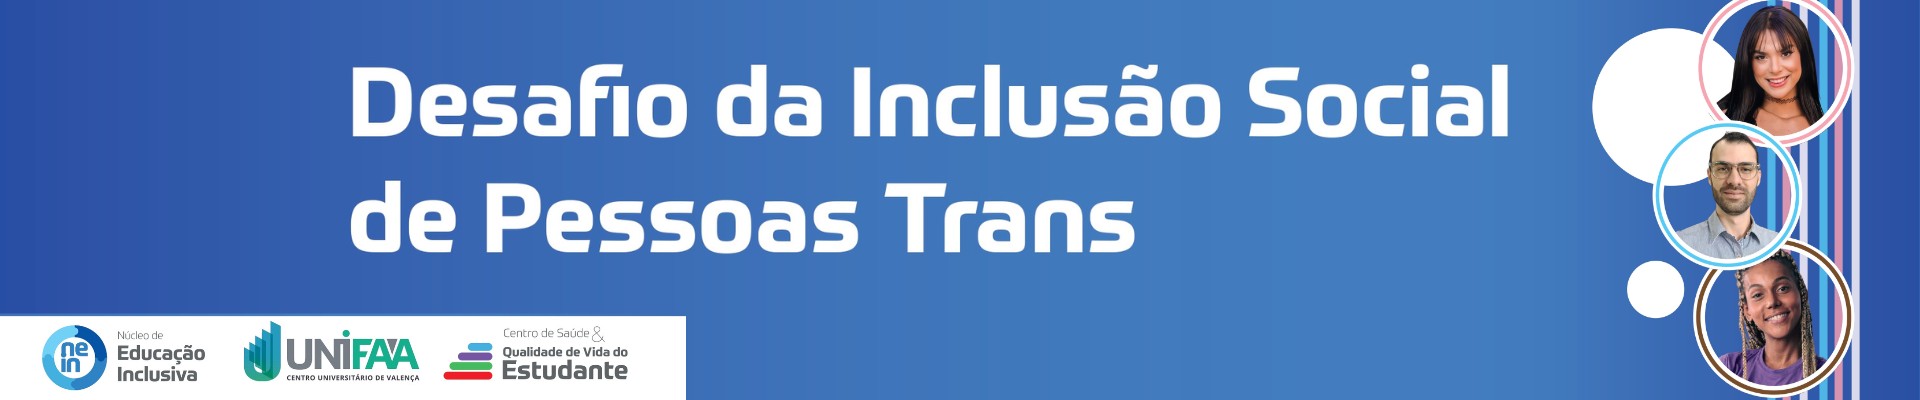 Escola Pública para qual público: desafio da Inclusão Social de Pessoas Trans.